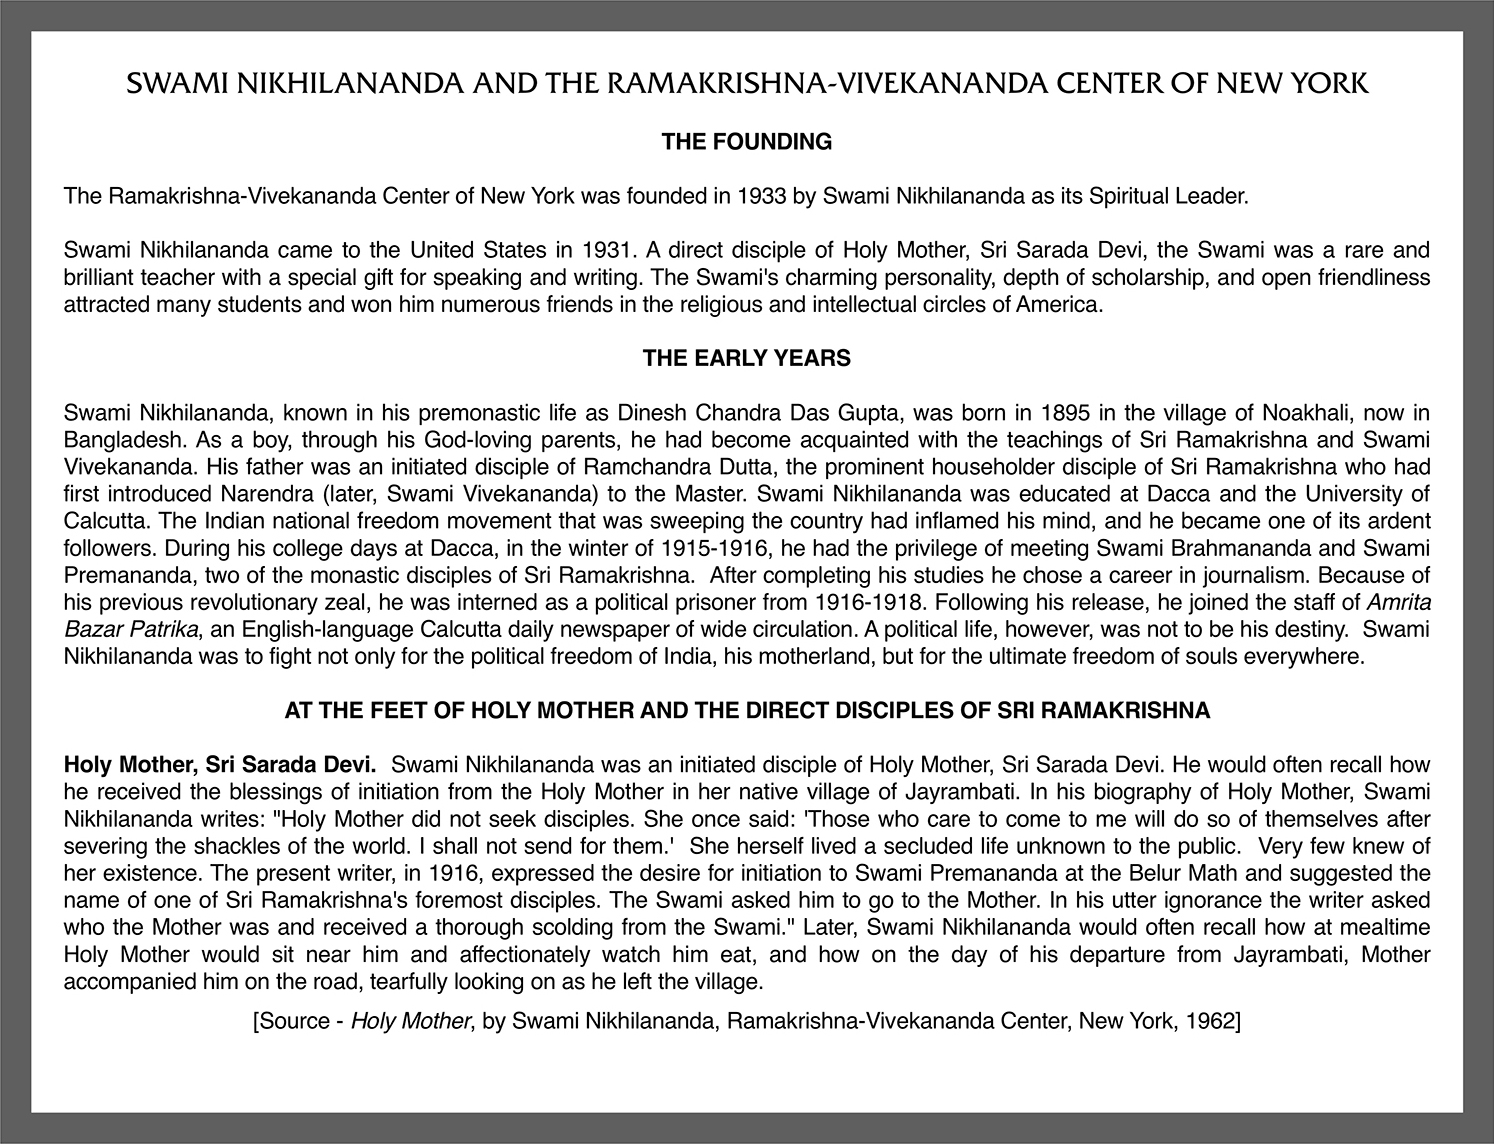 Swami Nikhilananda and the Ramakrisha-Vivekananda Center of New York page 1.